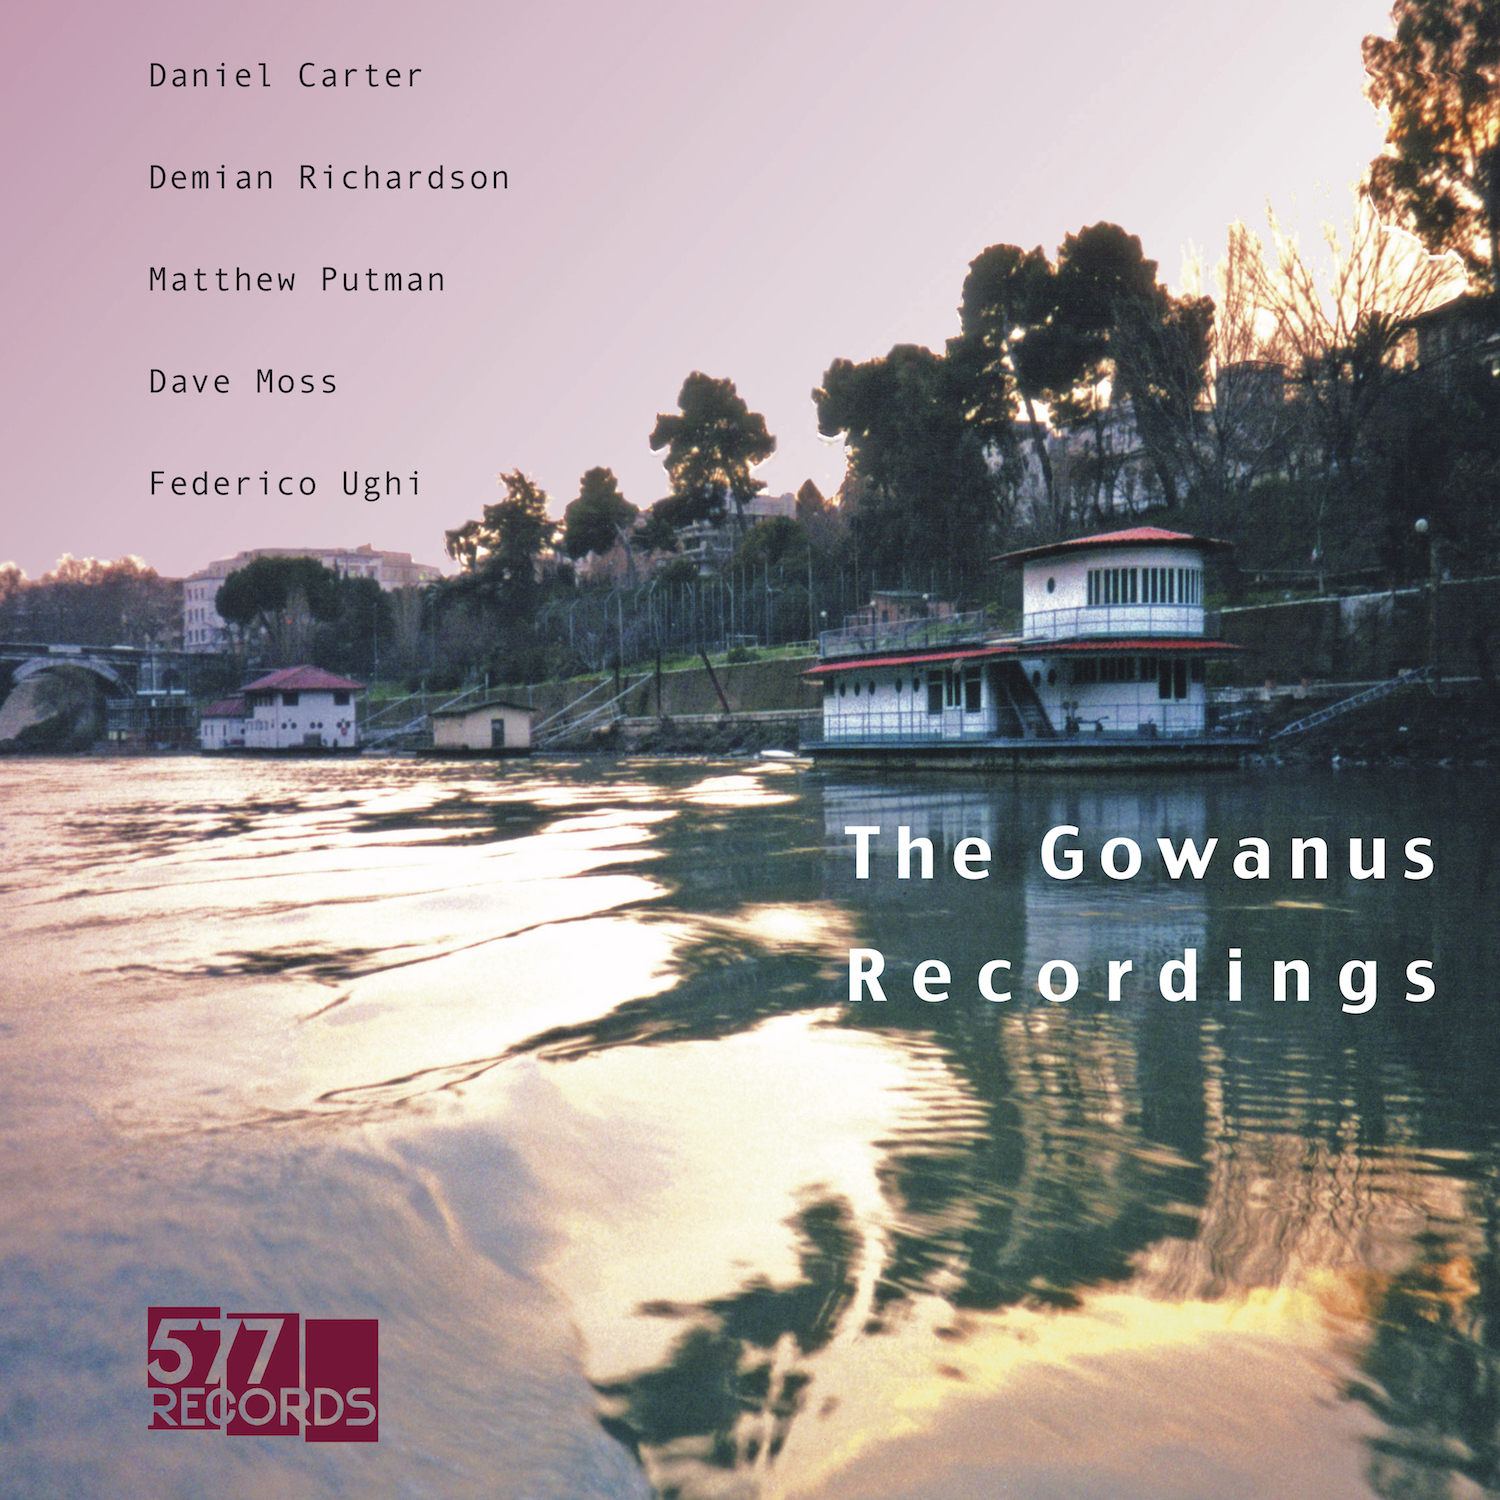 THE GOWANUS RECORDINGS